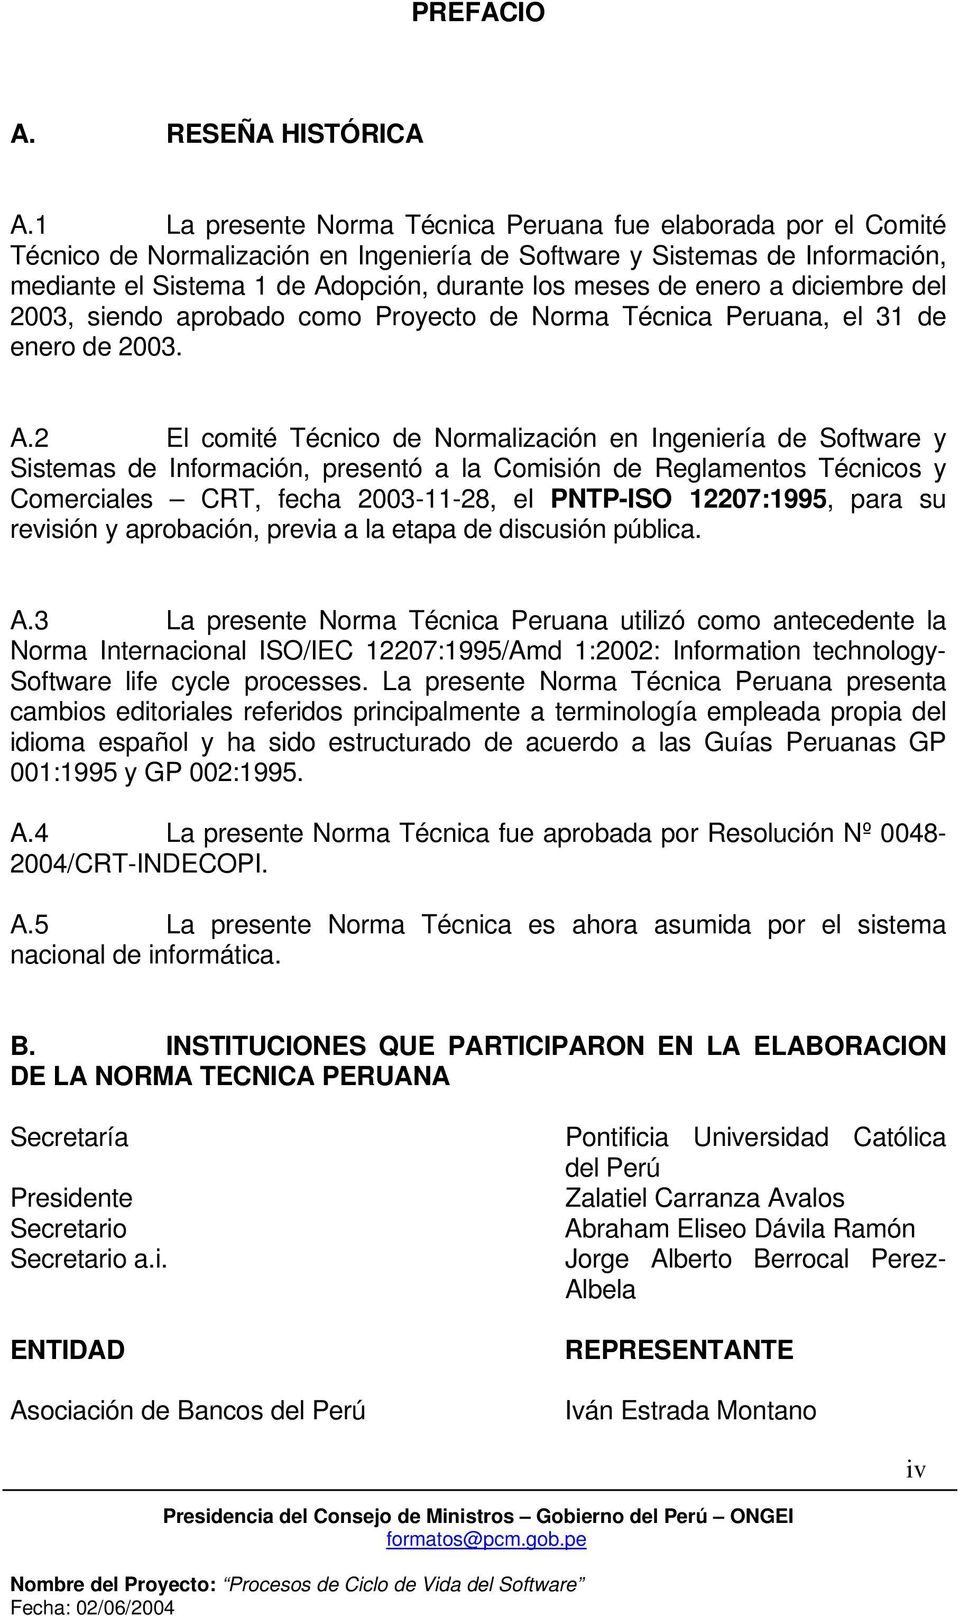 enero a diciembre del 2003, siendo aprobado como Proyecto de Norma Técnica Peruana, el 31 de enero de 2003. A.